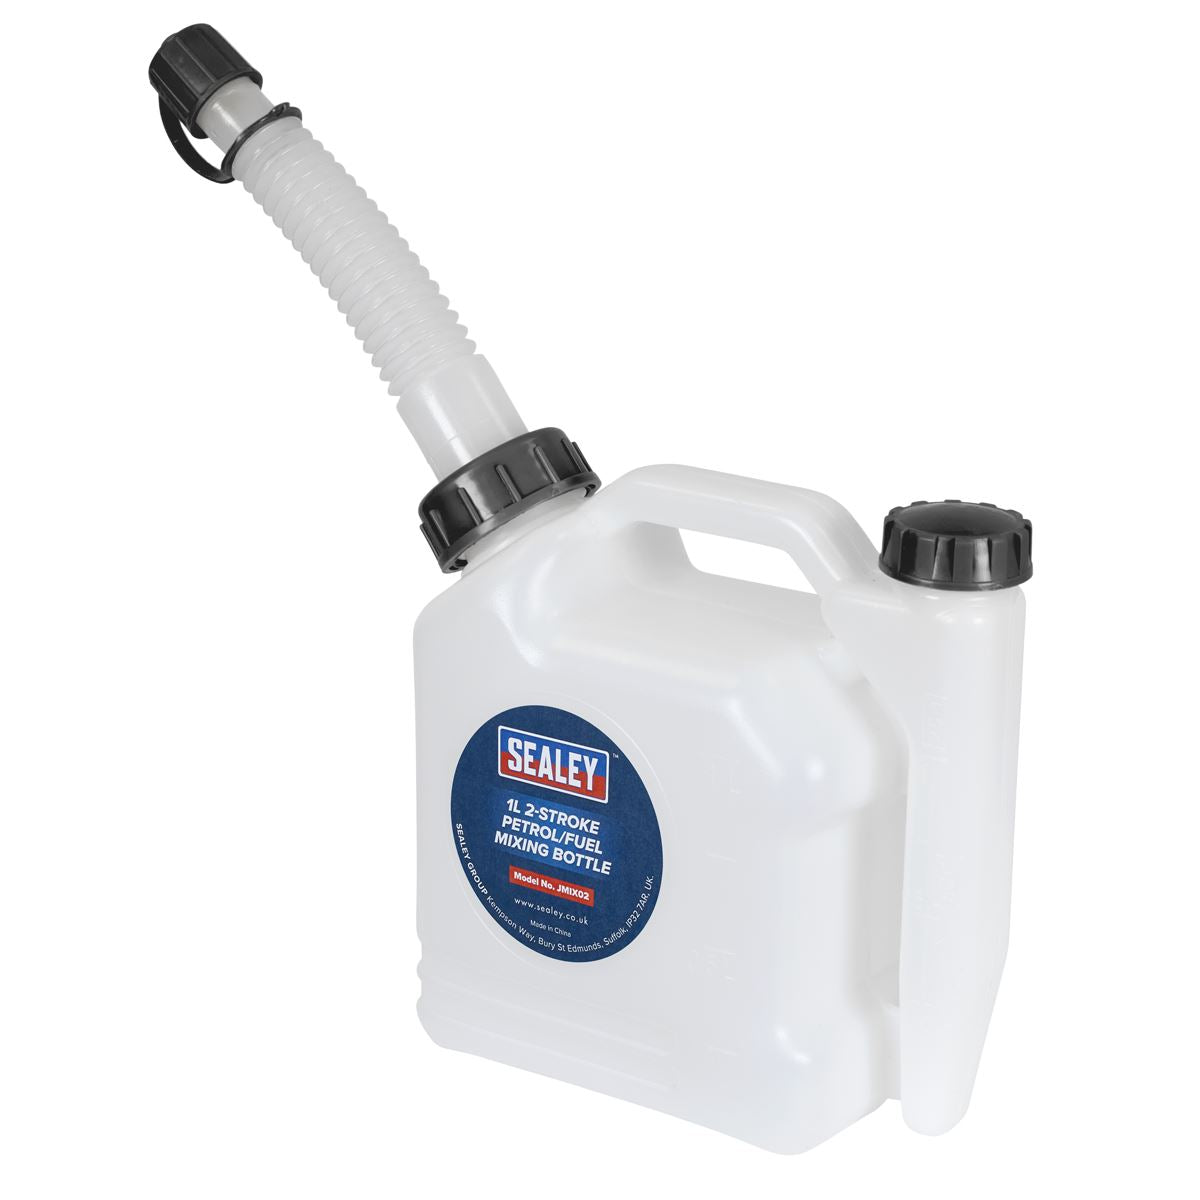 Sealey 2-Stroke Fuel Mixing Bottle 1L